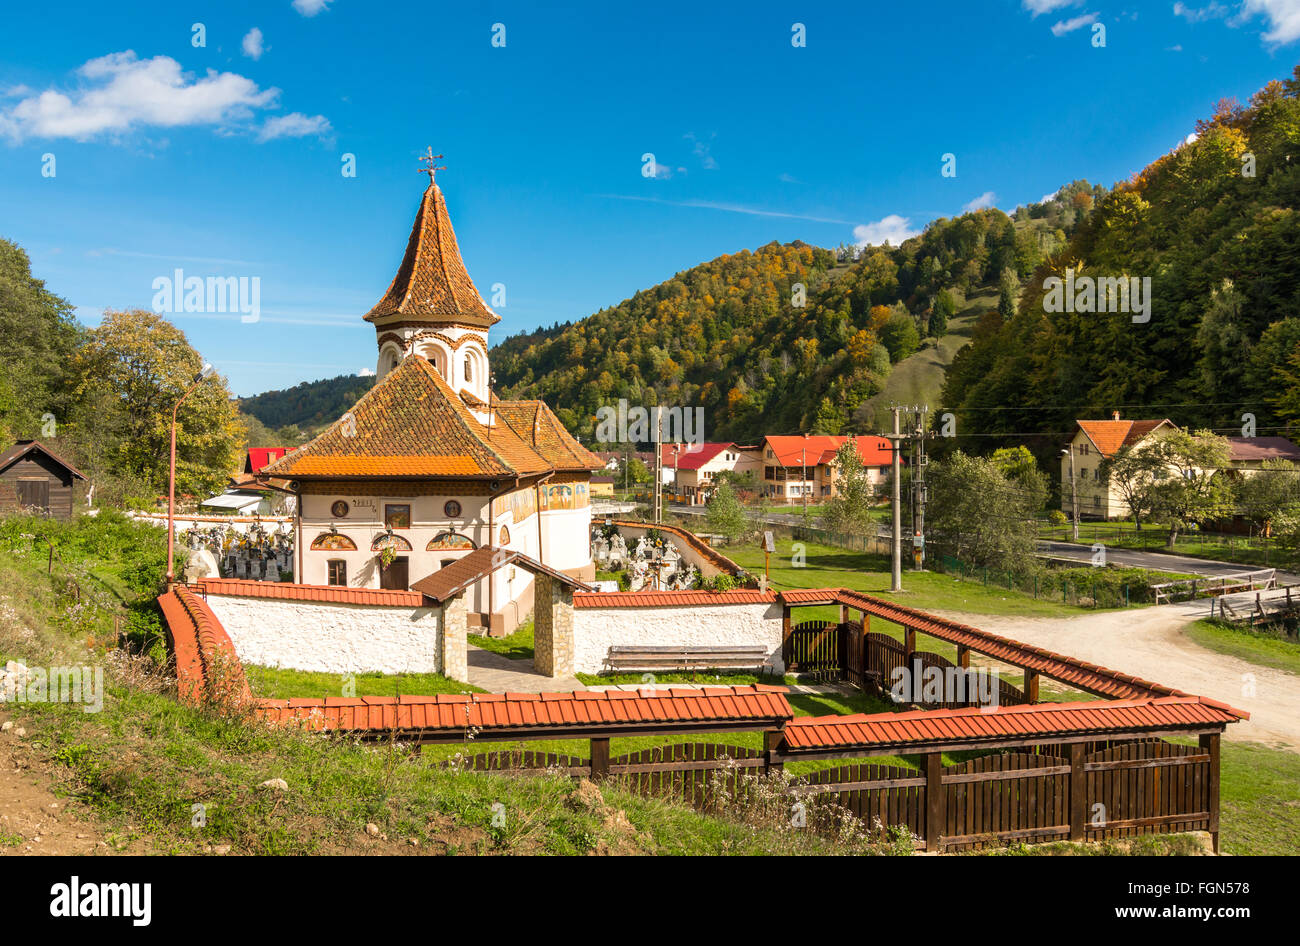 Vecchia chiesa in Simon vilage, in autunno i colori in Ban-Moeciu, Romania Foto Stock